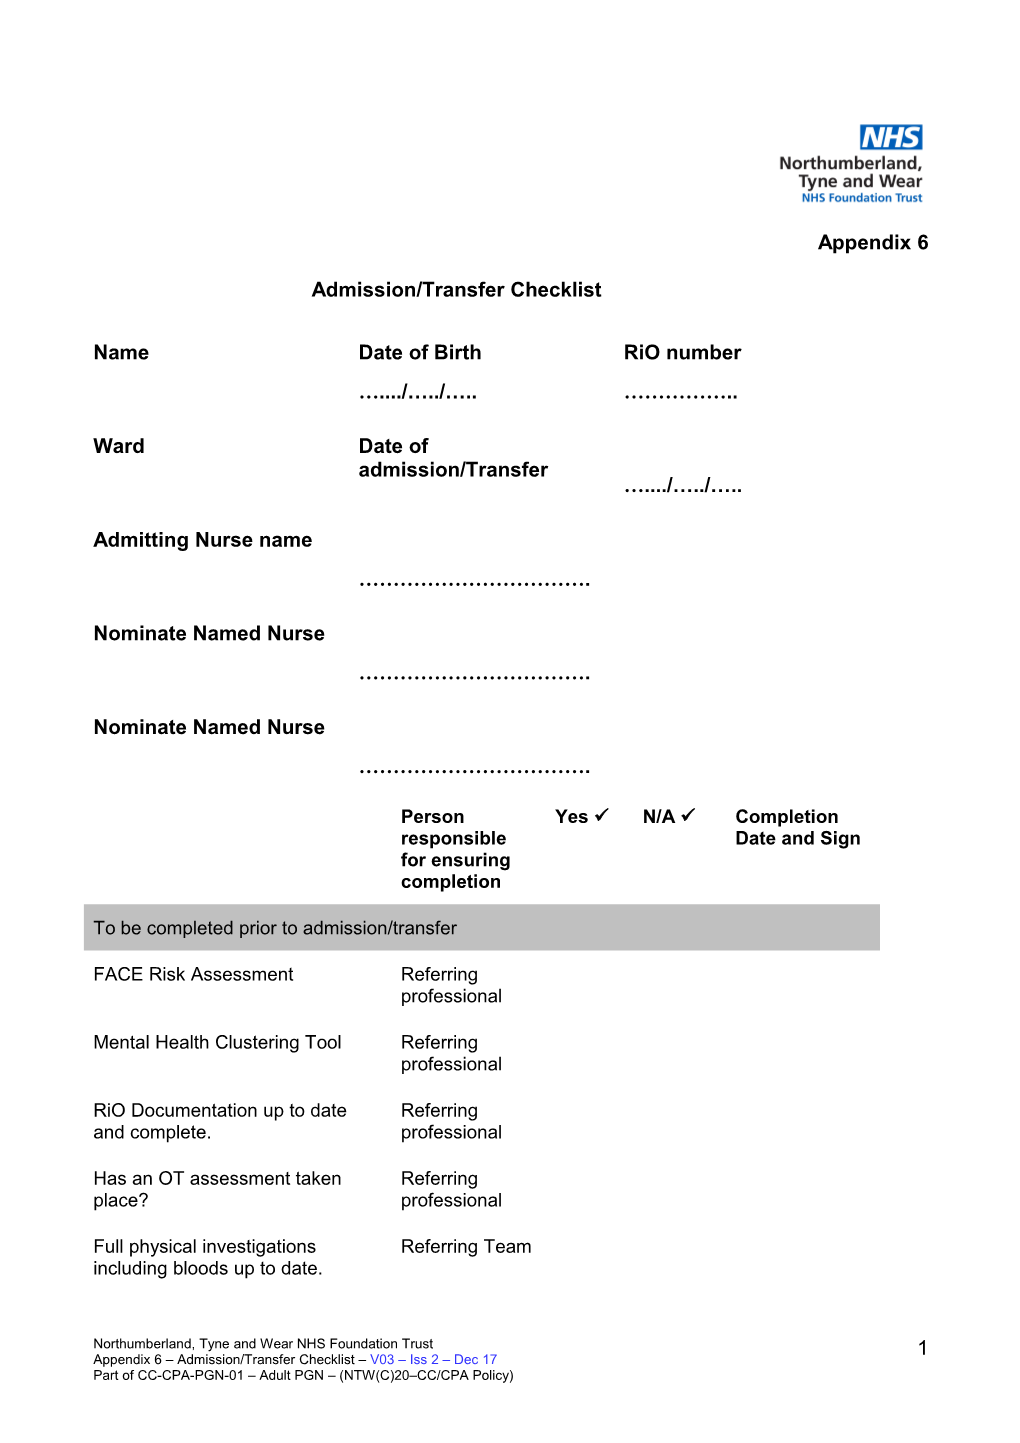 Appendix 6: Admission/Transfer Checklist